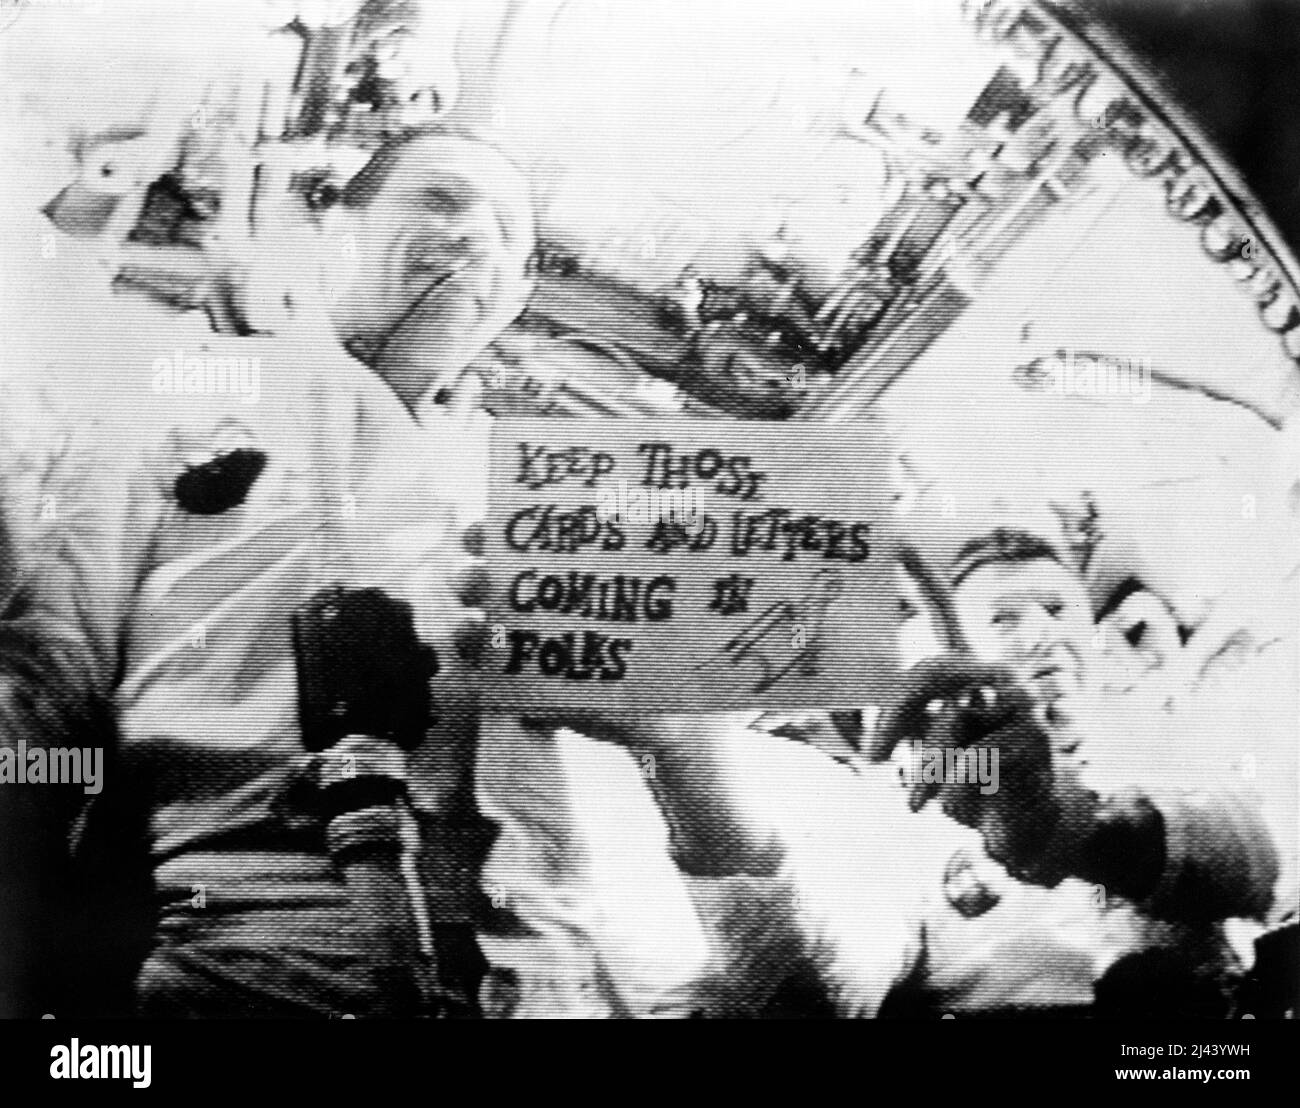 Gli astronauti Walter Schirra (a destra), comandante della missione, e Donn Eisele, pilota del modulo di comando, sono visti nella prima trasmissione televisiva in diretta dallo spazio. Schirra sta tenendo un cartello che dice: "Mantieni le carte e le lettere che arrivano, gente!" Foto Stock